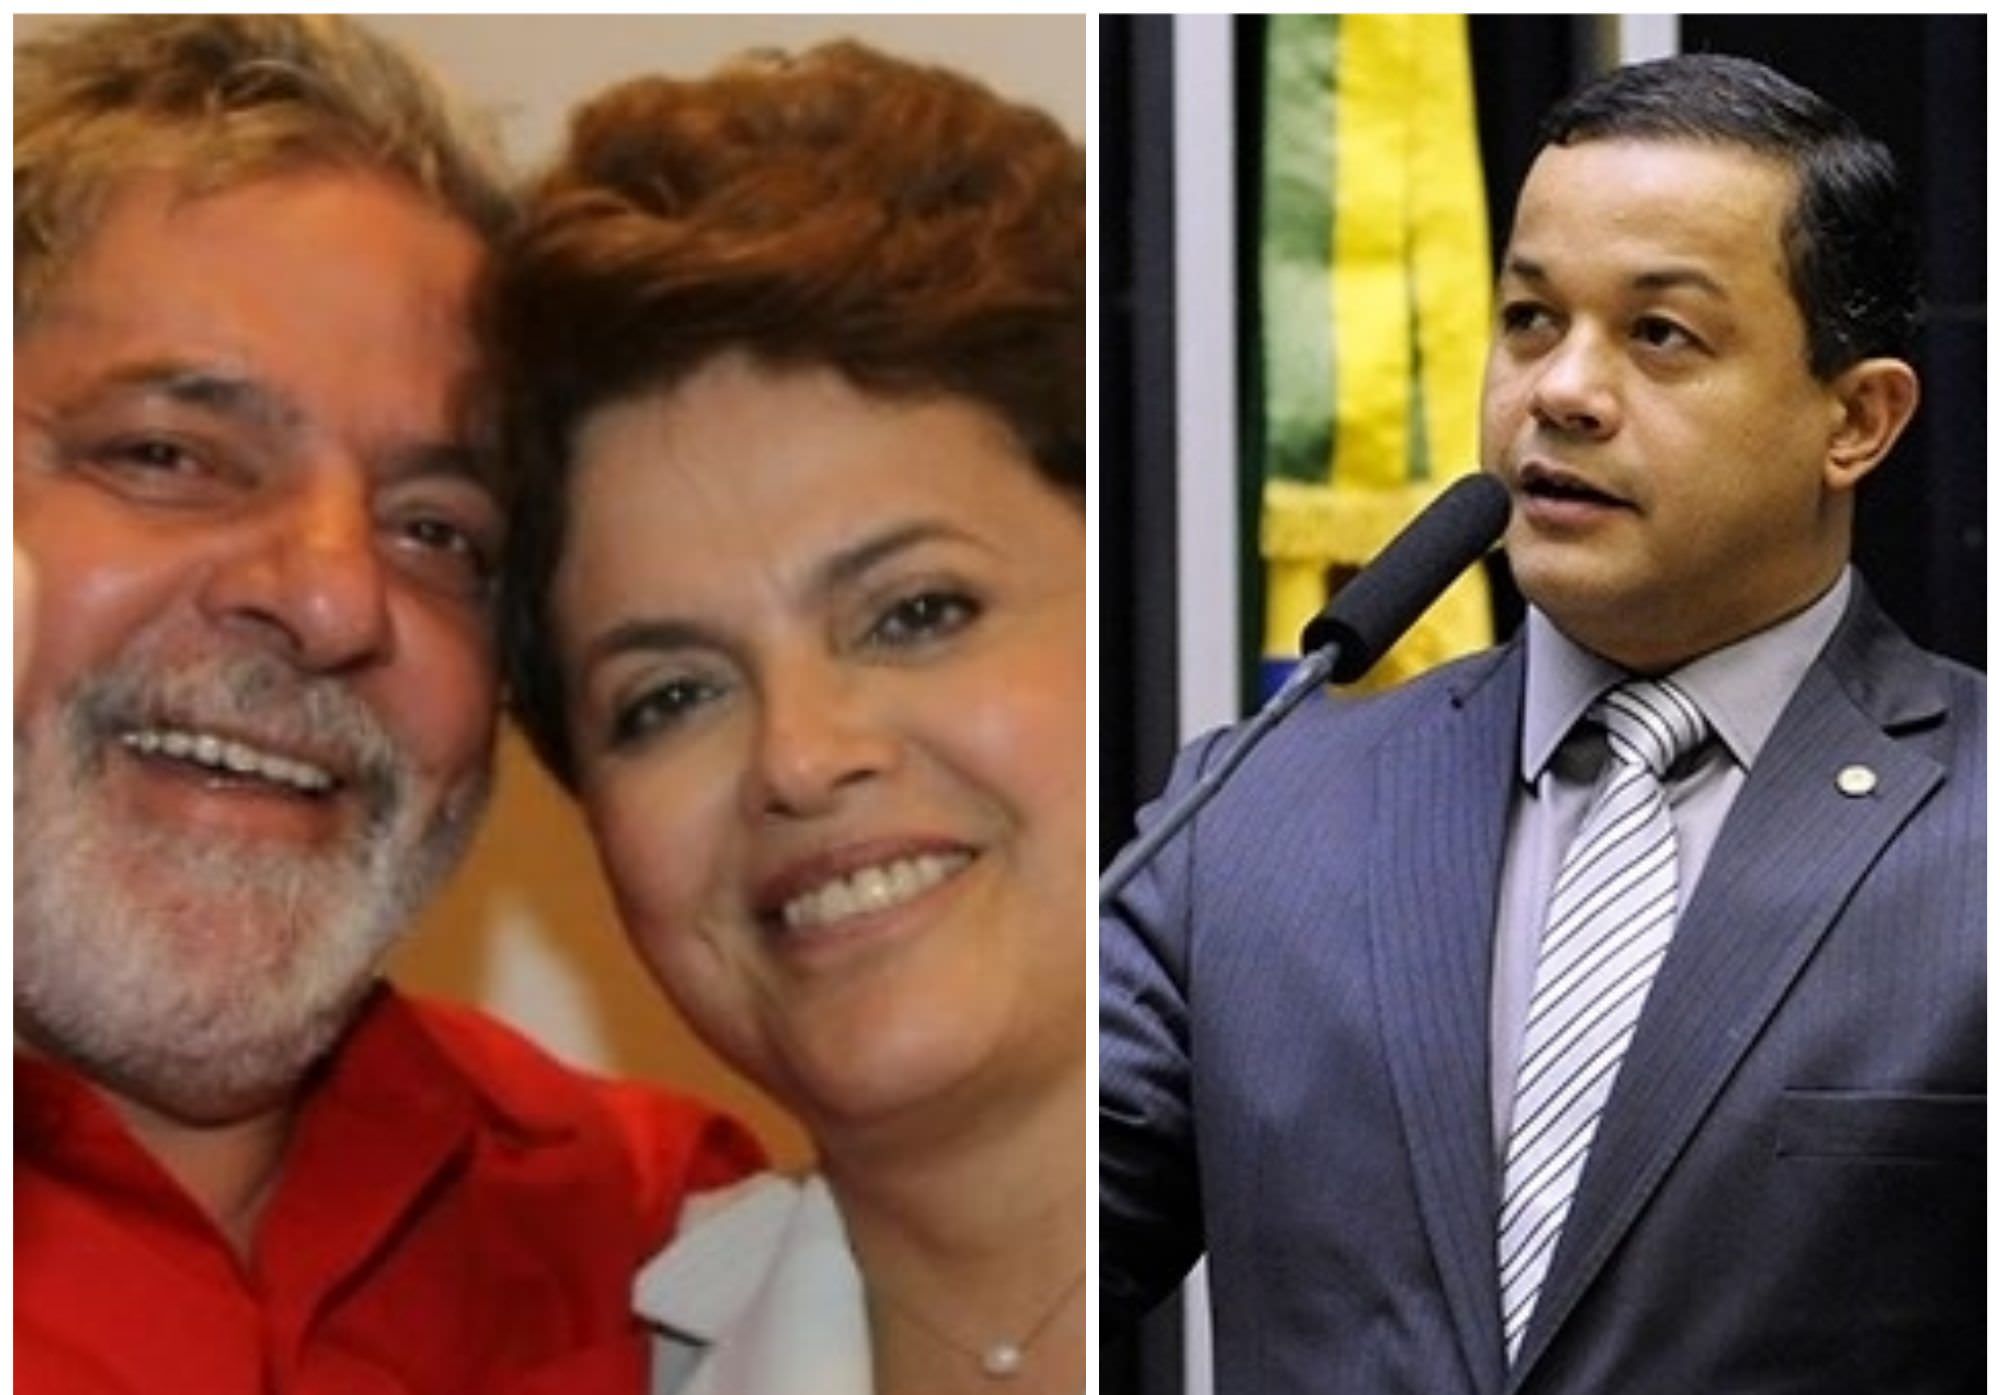 Delegado Pablo convoca Lula e Dilma para depor na CPI do BNDES